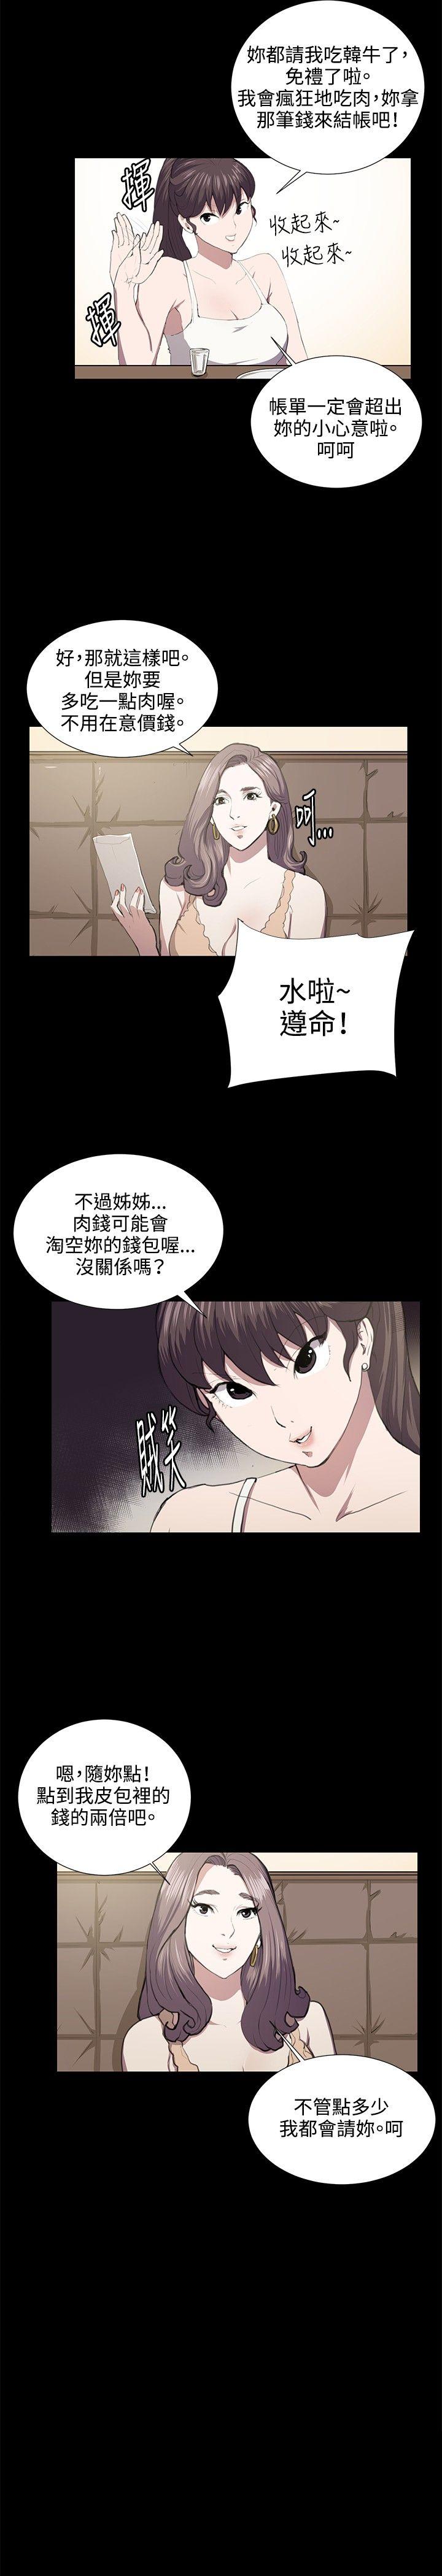 韩国污漫画 深夜便利店 第46话 12